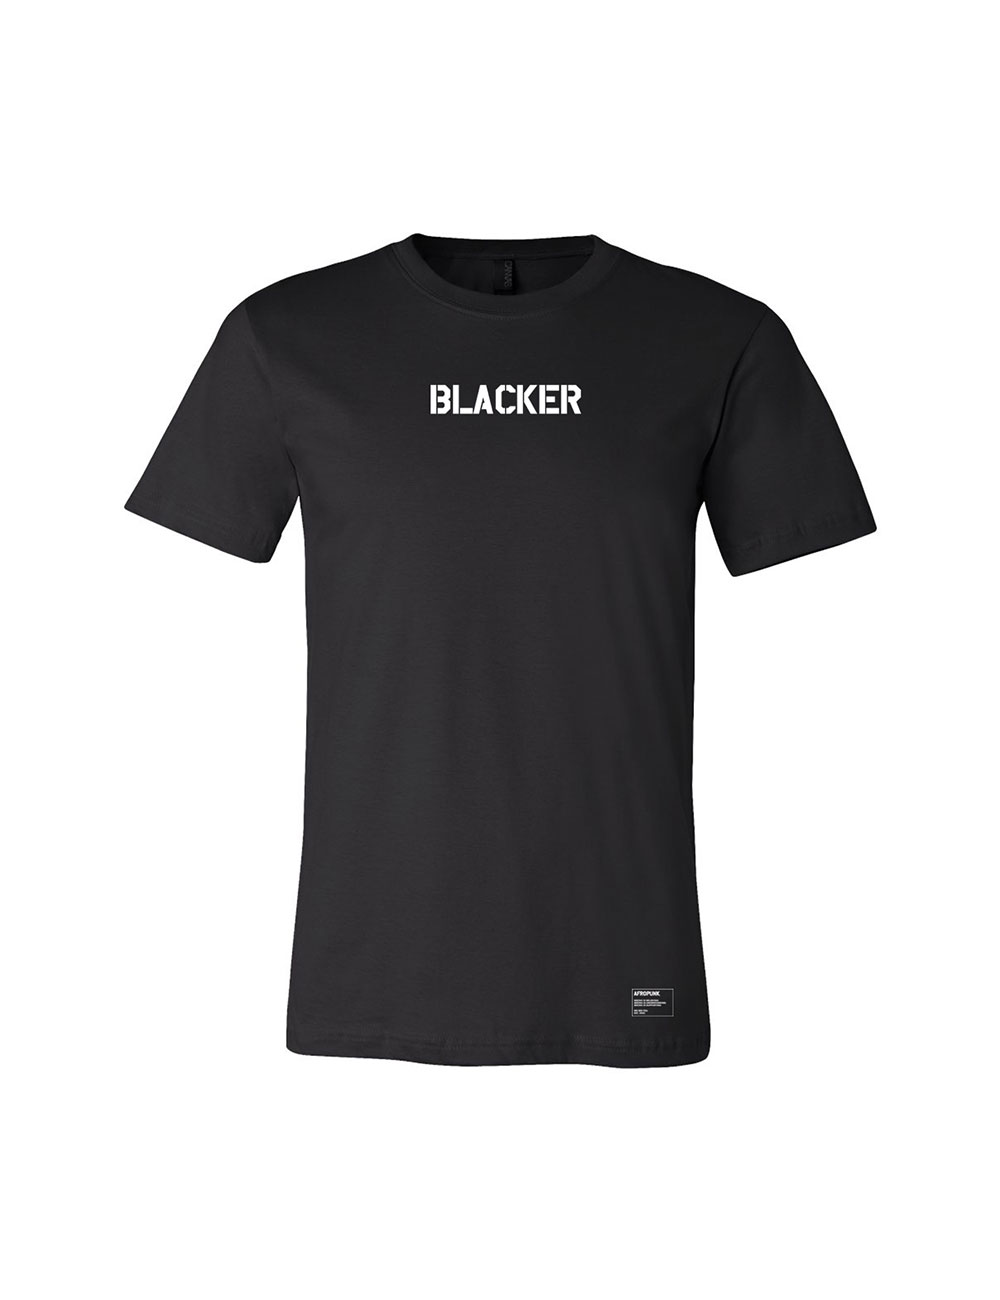 Afropunk - Official Merch Shop - T-Shirts - Blacker tee